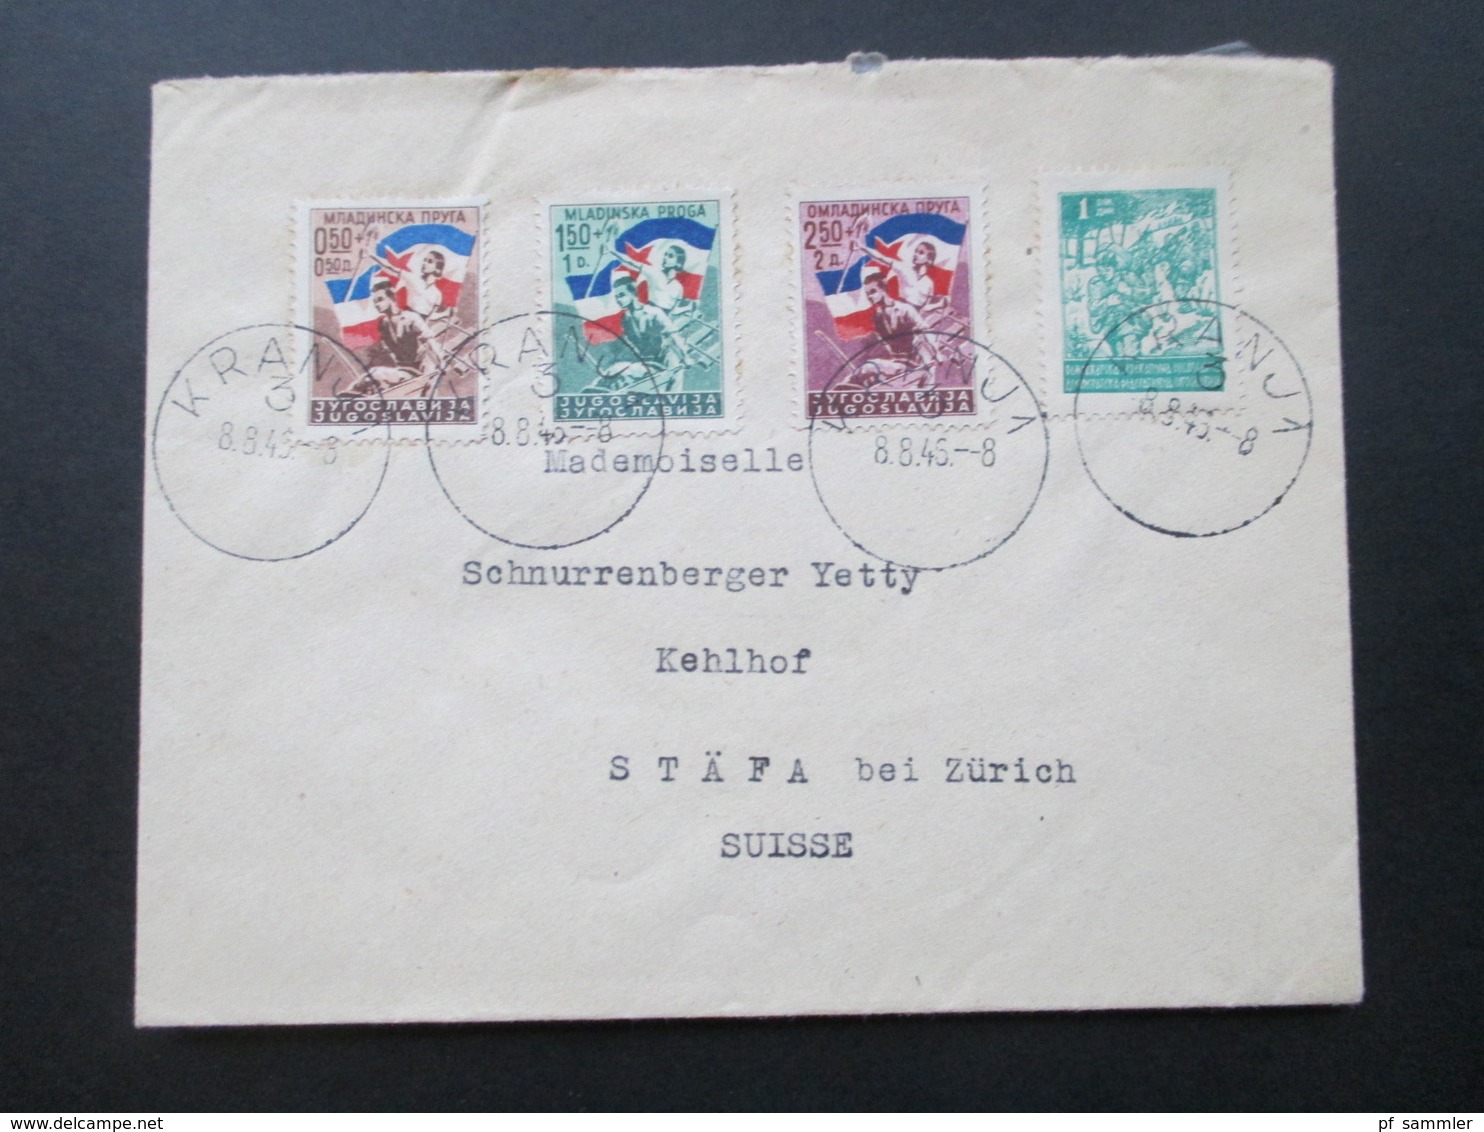 Jugoslawien 1946 Freiwilliger Eisenbahnbau Nr. 497-499 MiF Mit Nr. 471 Bedarfsbrief In Die Schweiz - Brieven En Documenten